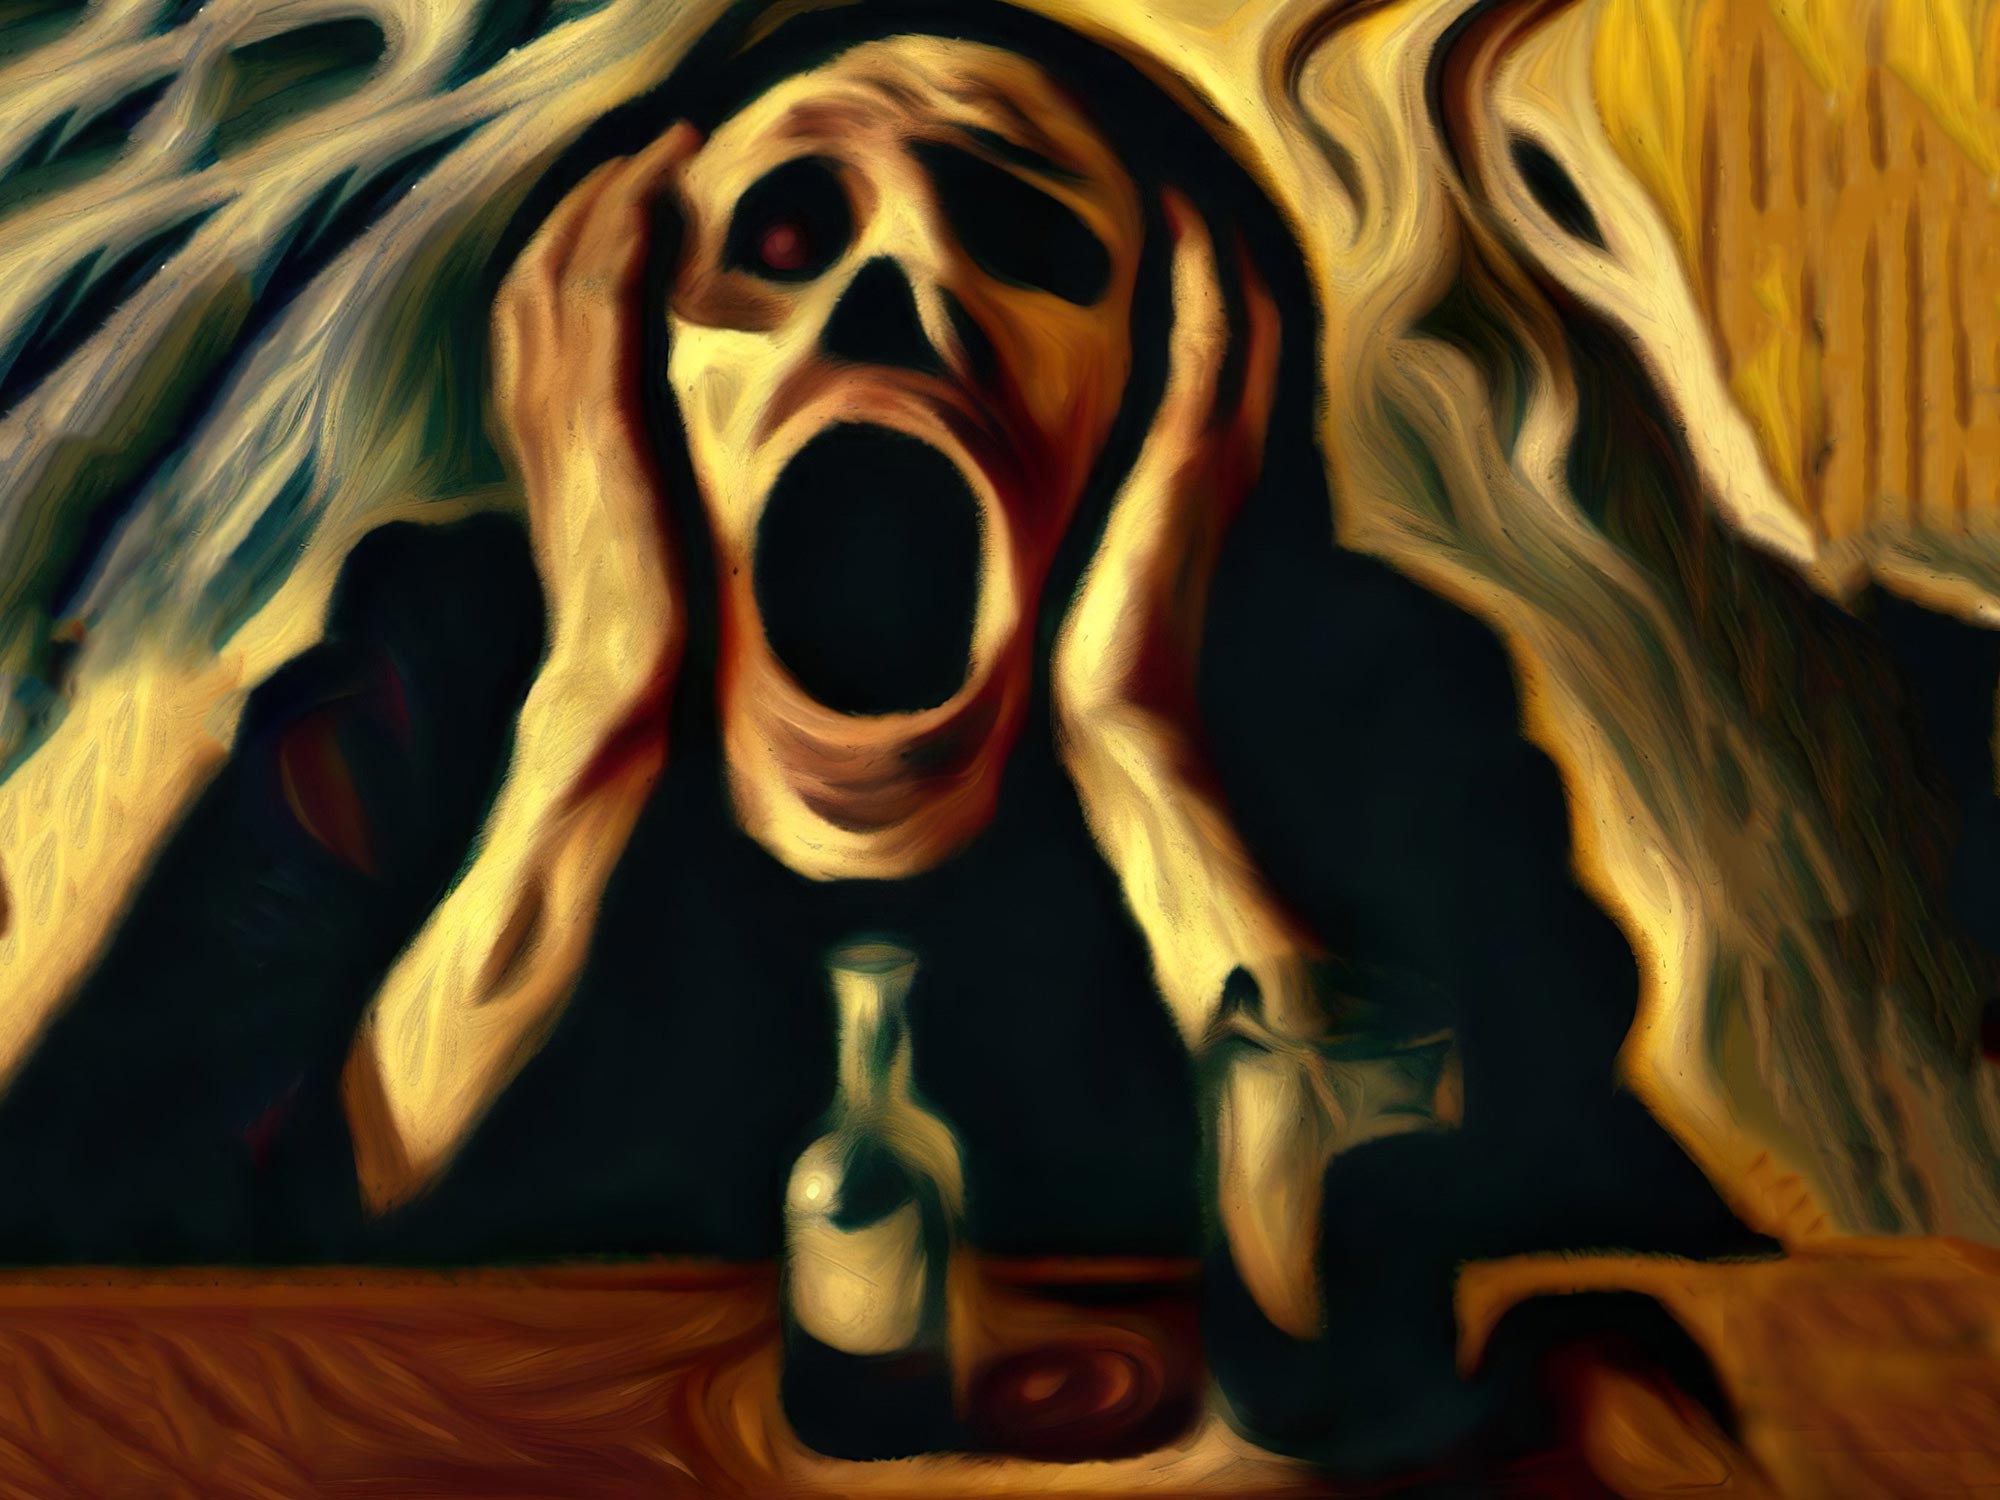 アルコール依存症の悲鳴の概念